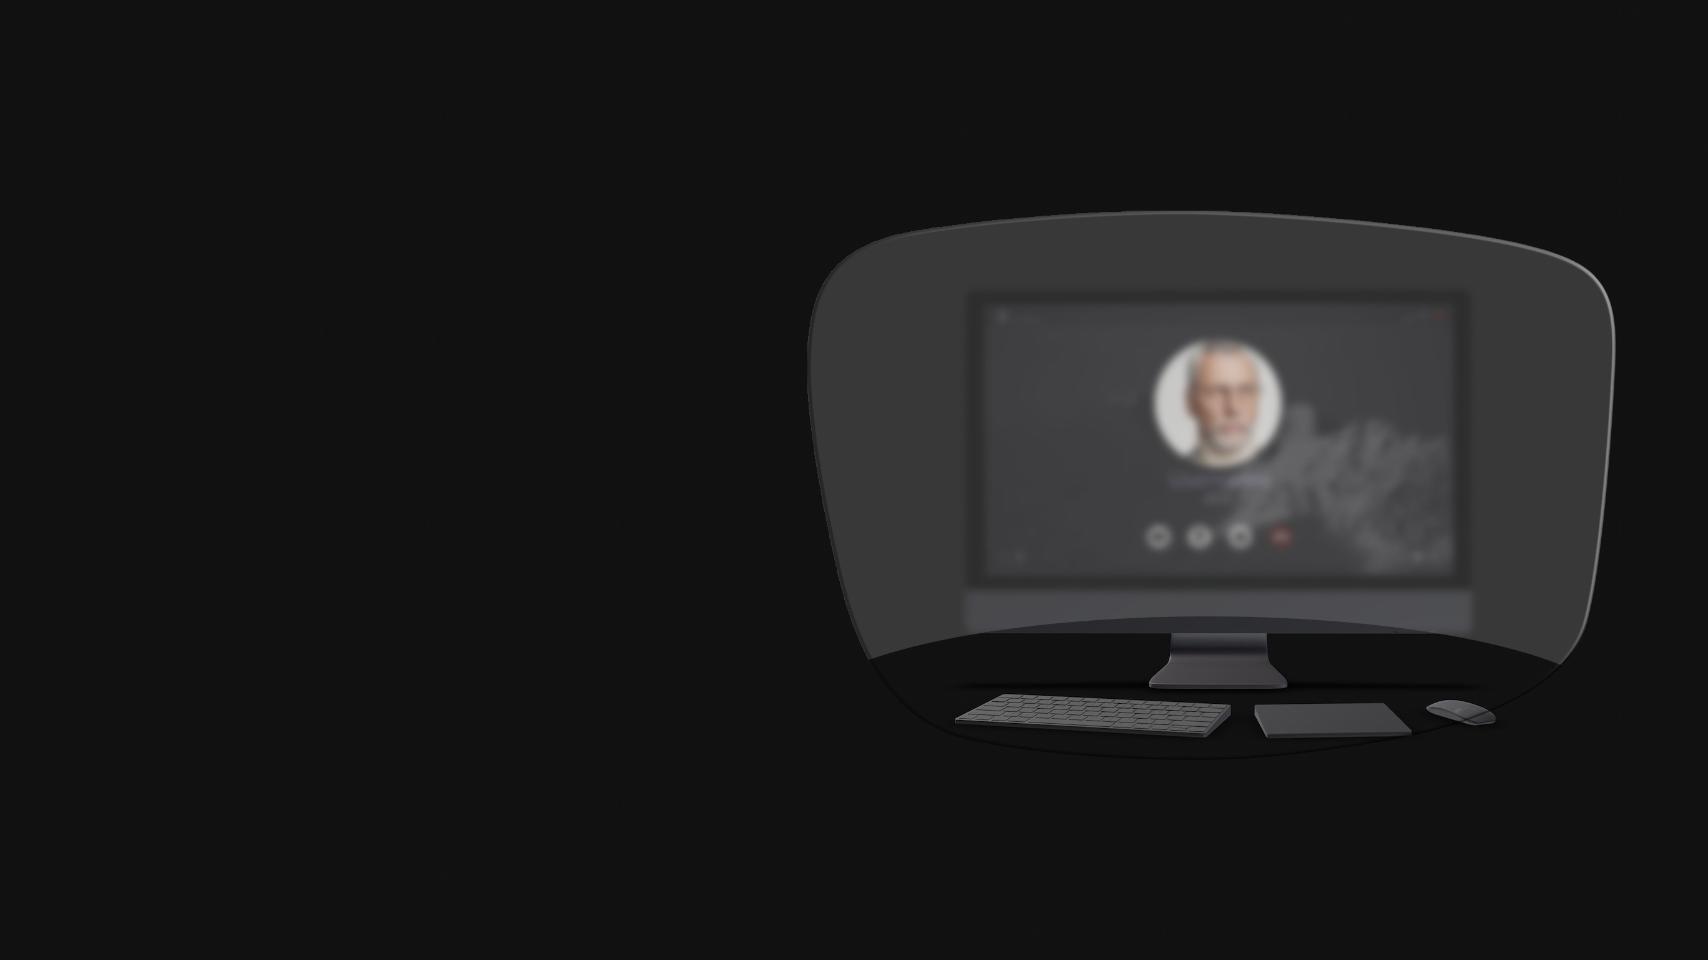 La vista de un ordenador de sobremesa, un teclado, un ratón y un libro a través de un esquema de unas gafas de lectura muestra que solo los objetos cercanos son claramente visibles. La pantalla del ordenador está borrosa.